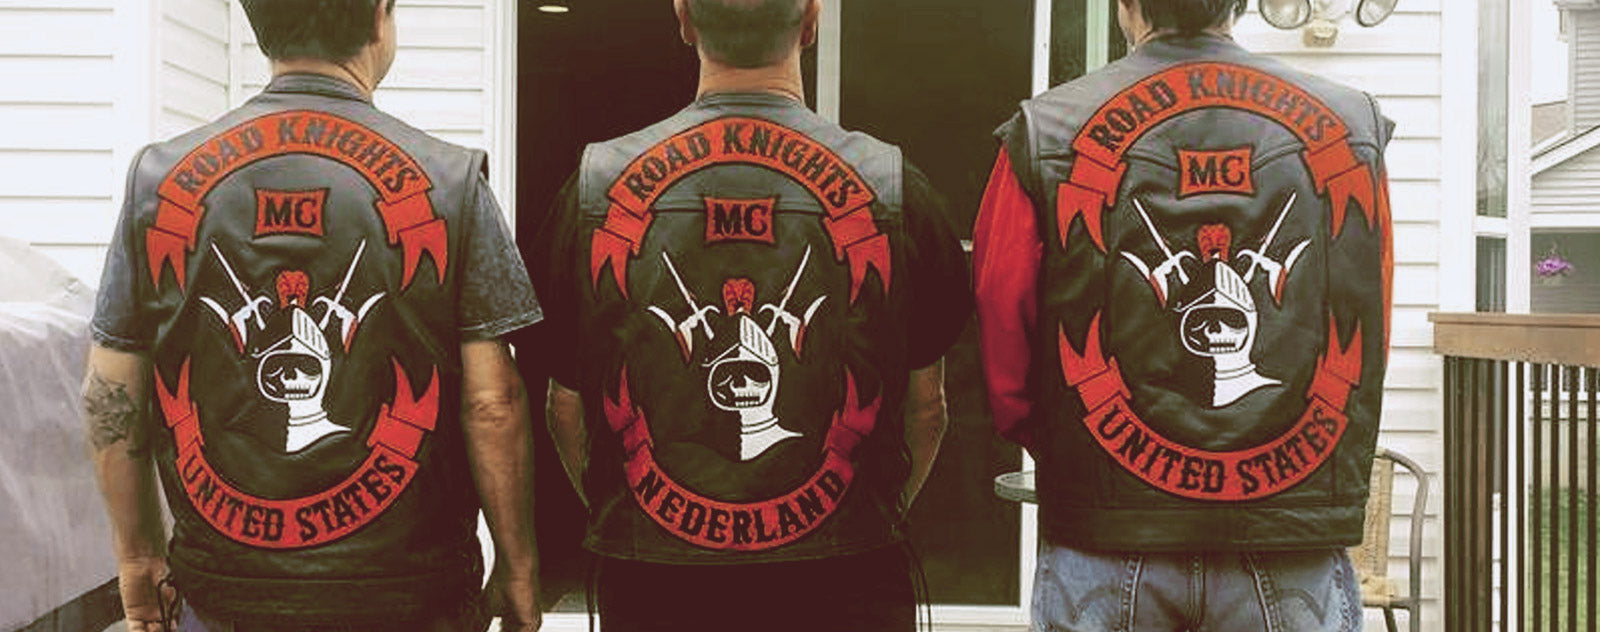 Membres Road Knights MC